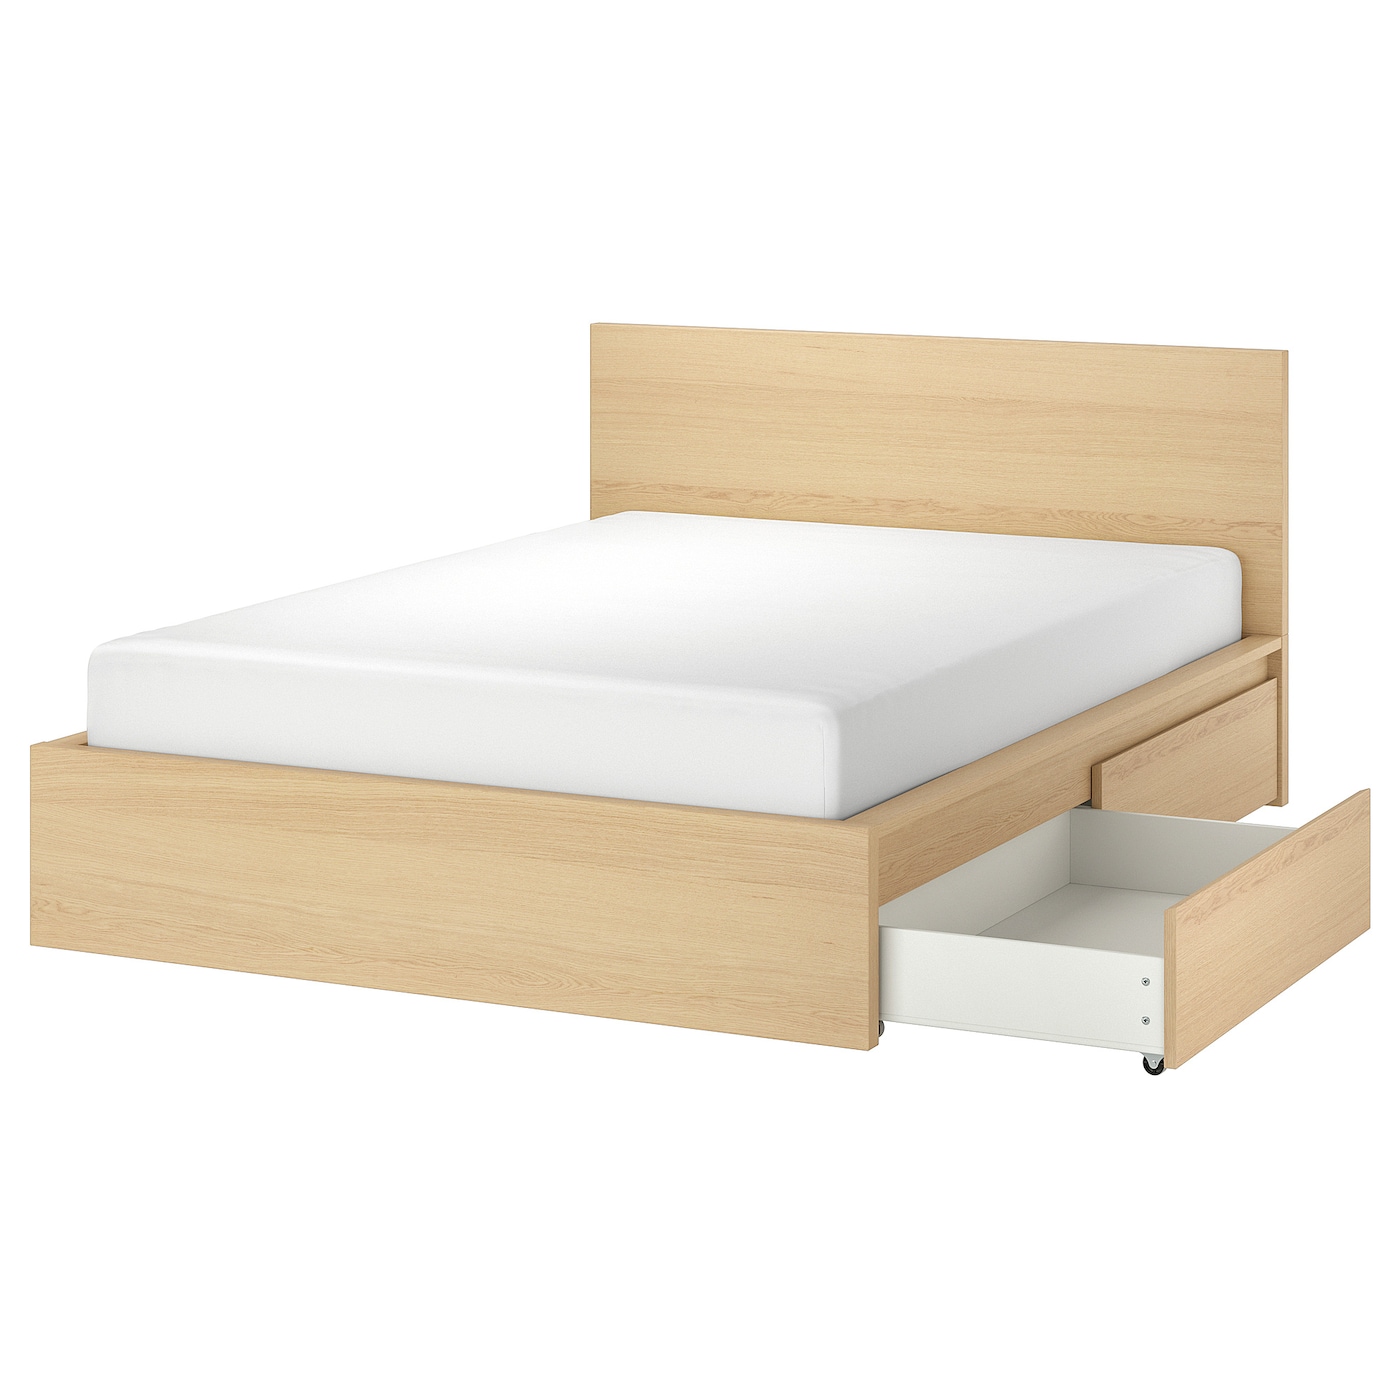 Каркас кровати с 2 ящиками для хранения - IKEA MALM, 200х140 см, под беленый дуб, МАЛЬМ ИКЕА